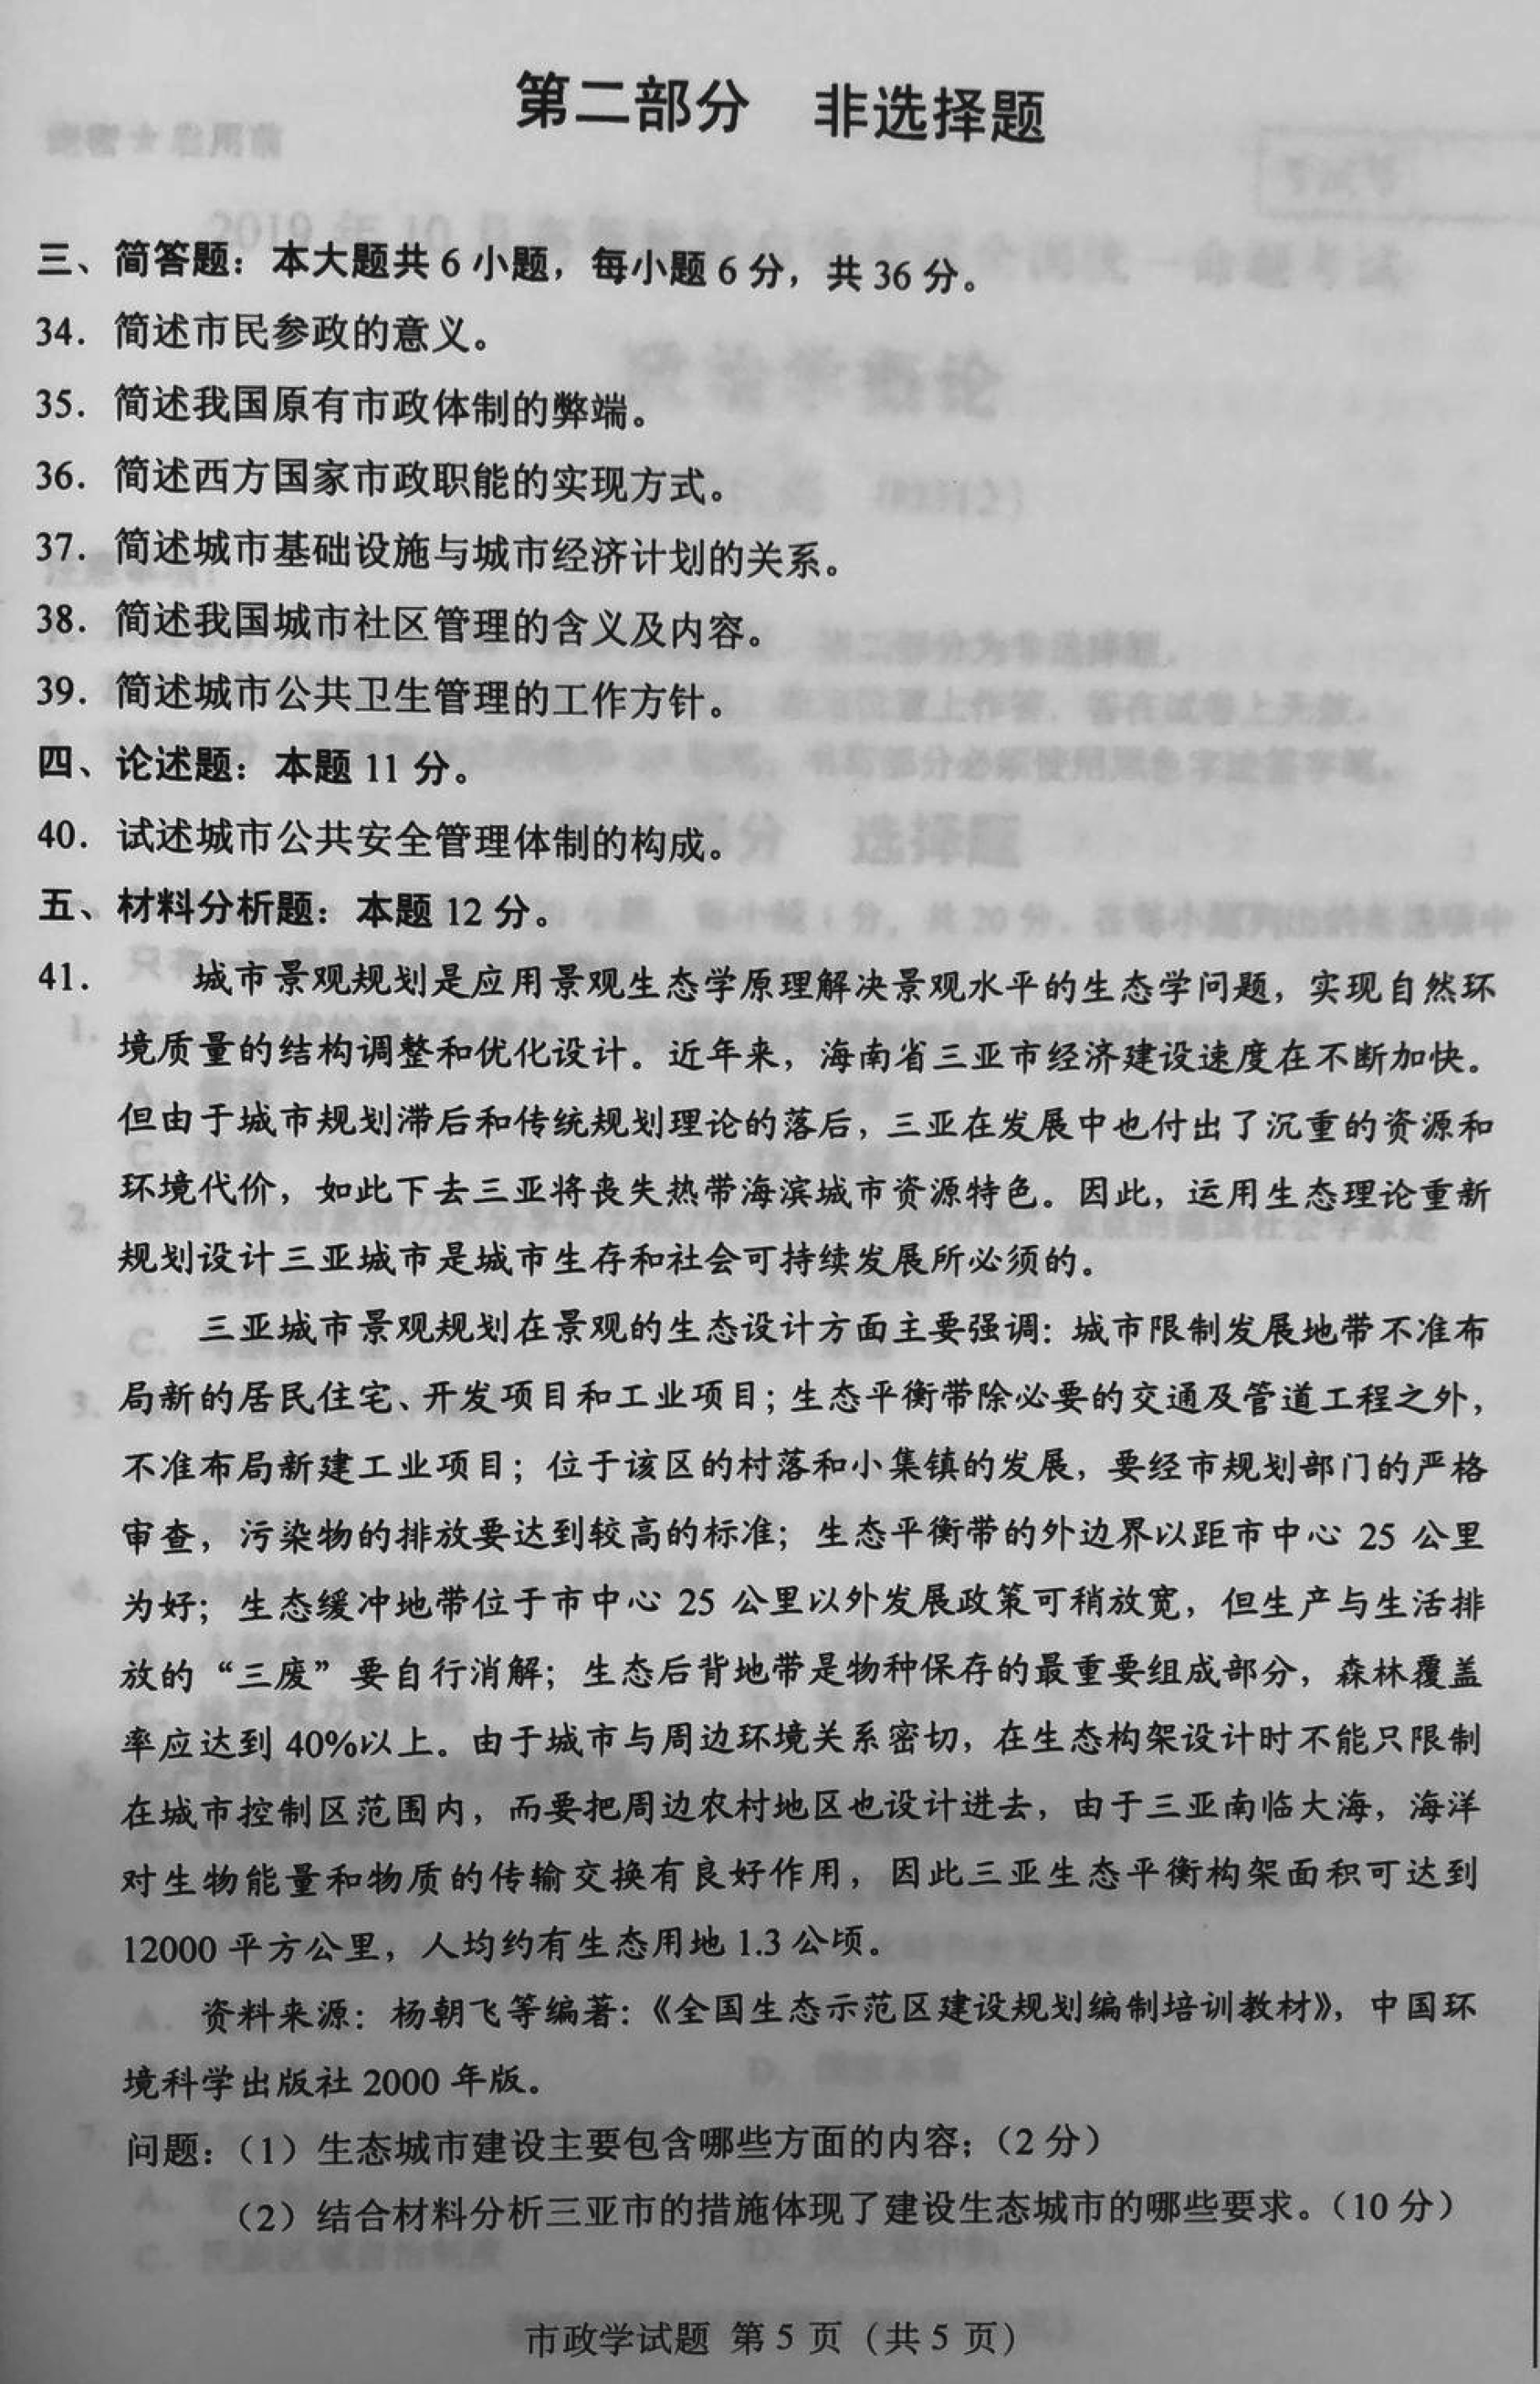 贵州省2019年10月自学考试市政学试题及答案